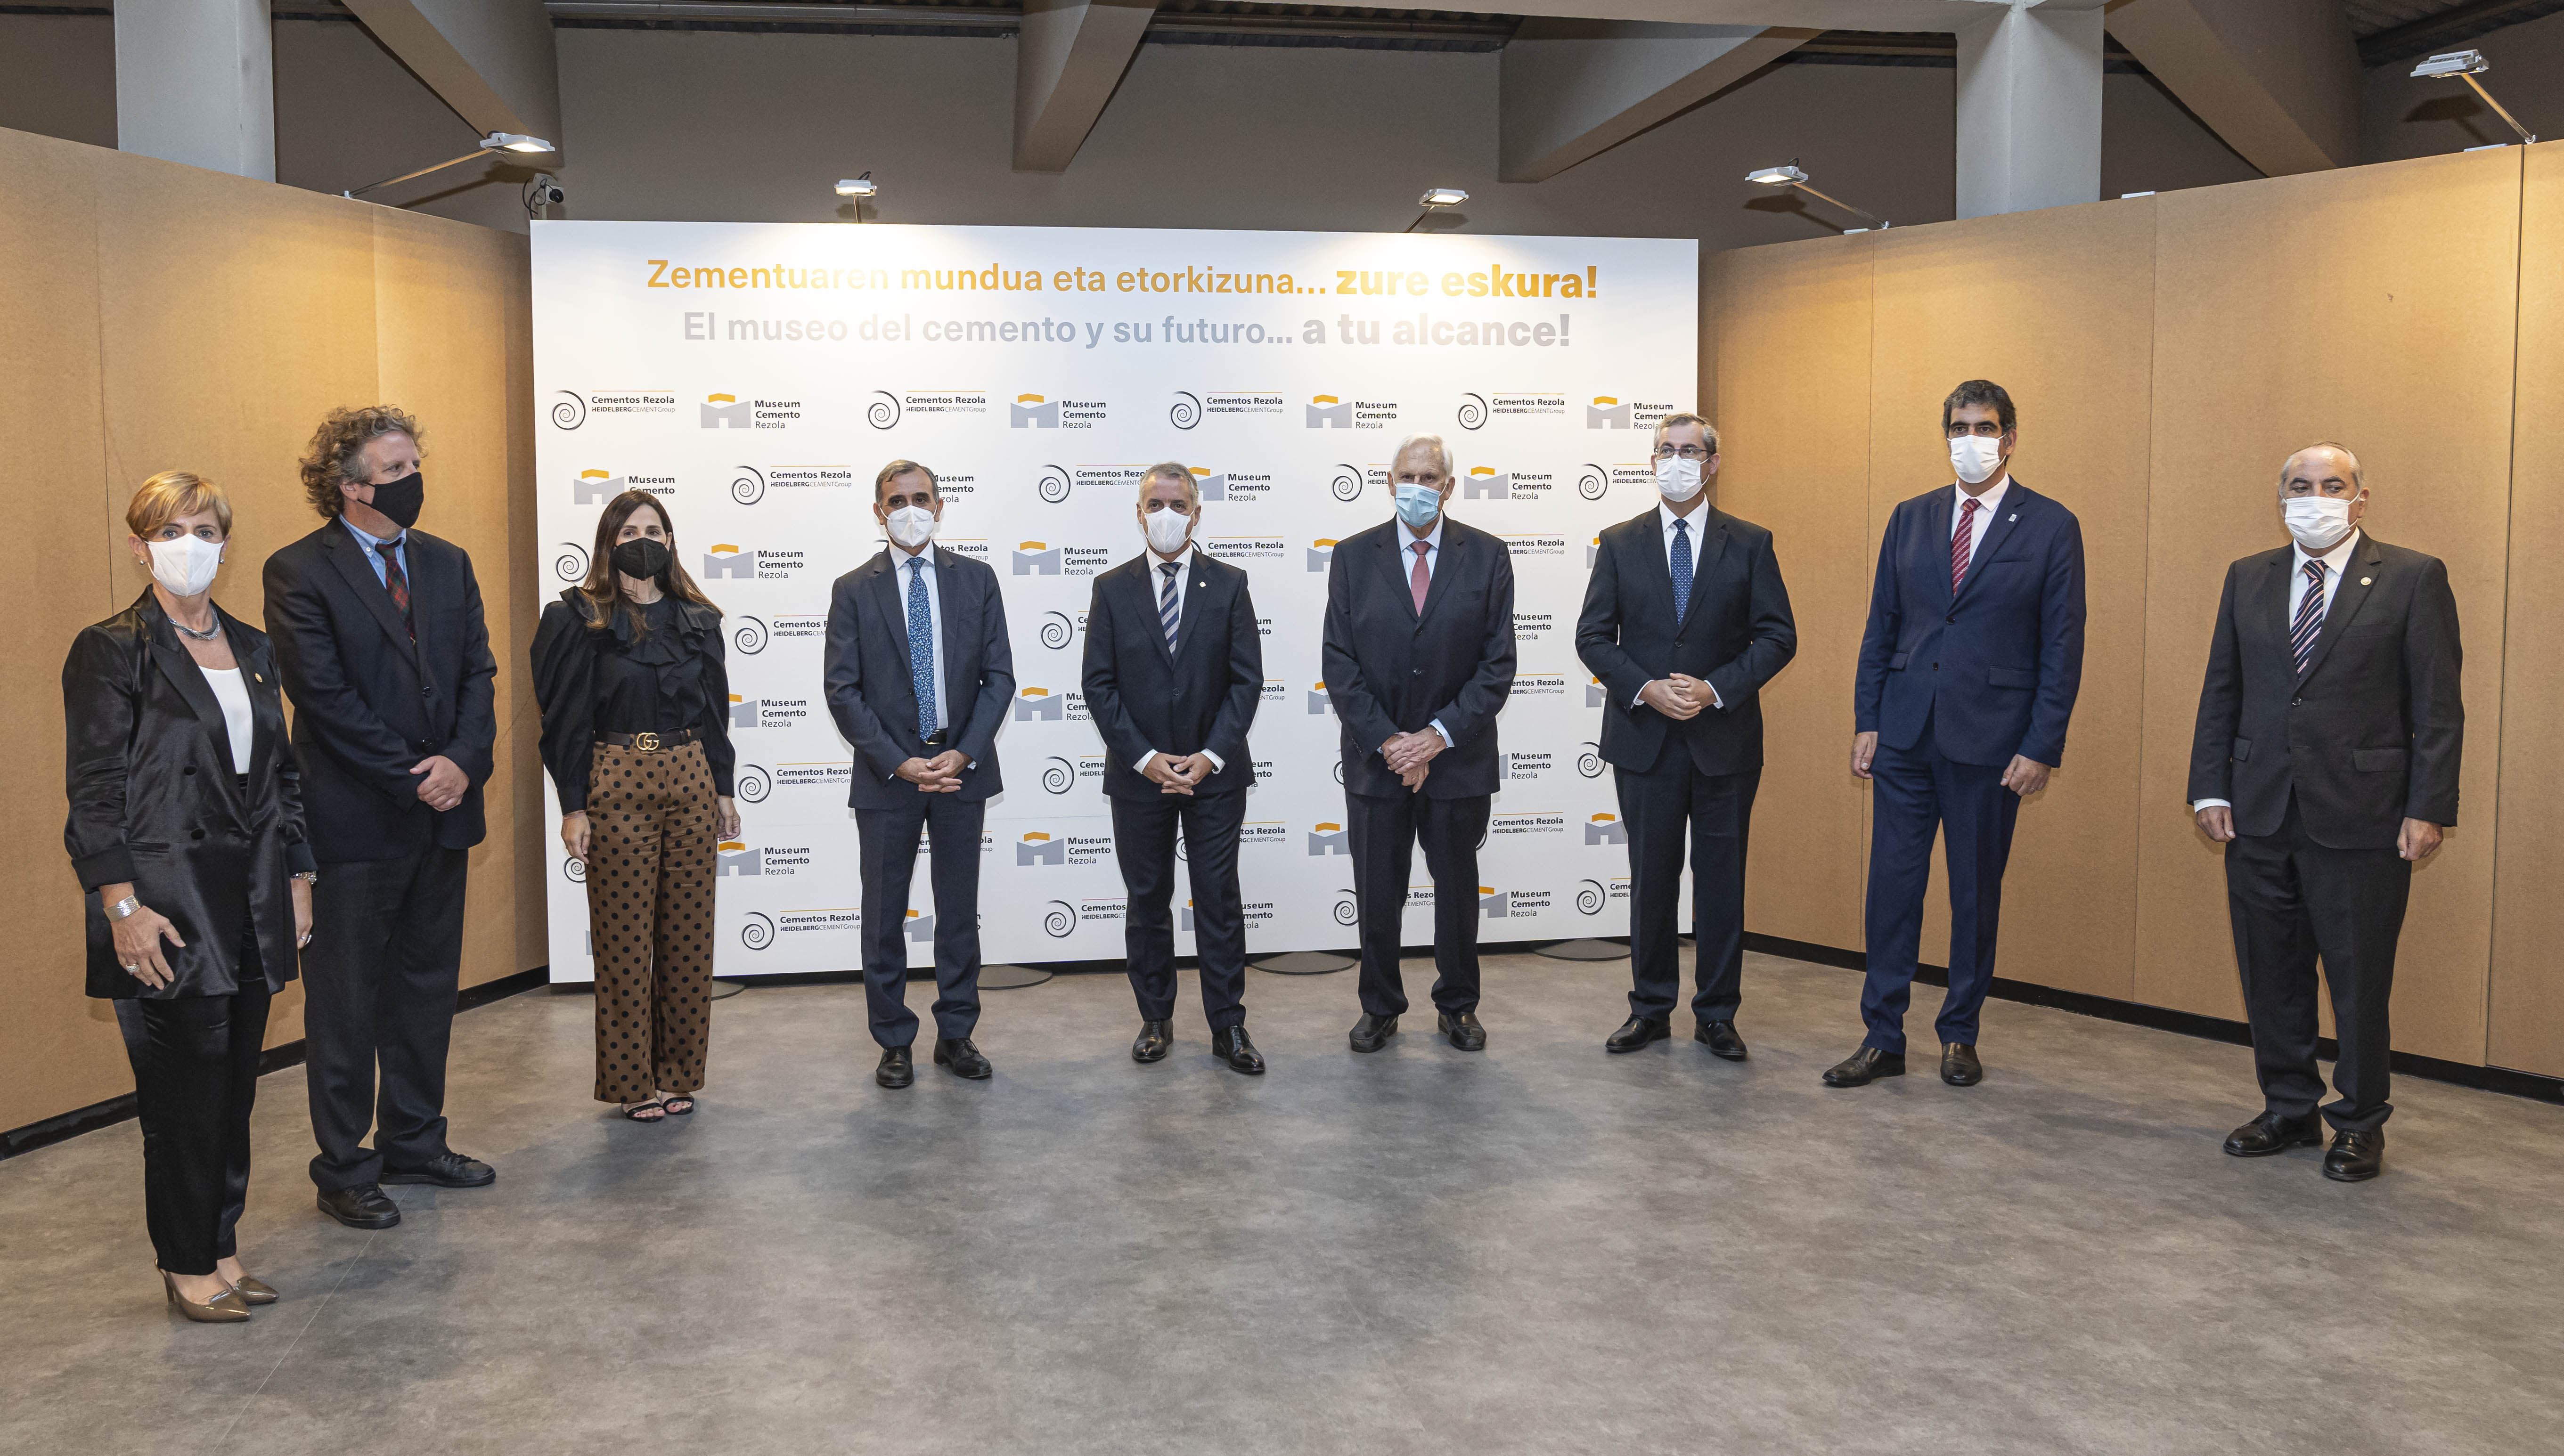 En el acto de inauguración del nuevo Museum Cemento Rezola han participado el Lehendakari Iñigo Urkullu; Markel Olano, Diputado General de Gipuzkoa; y Eneko Goia, Alcalde de Donostia-San Sebastián